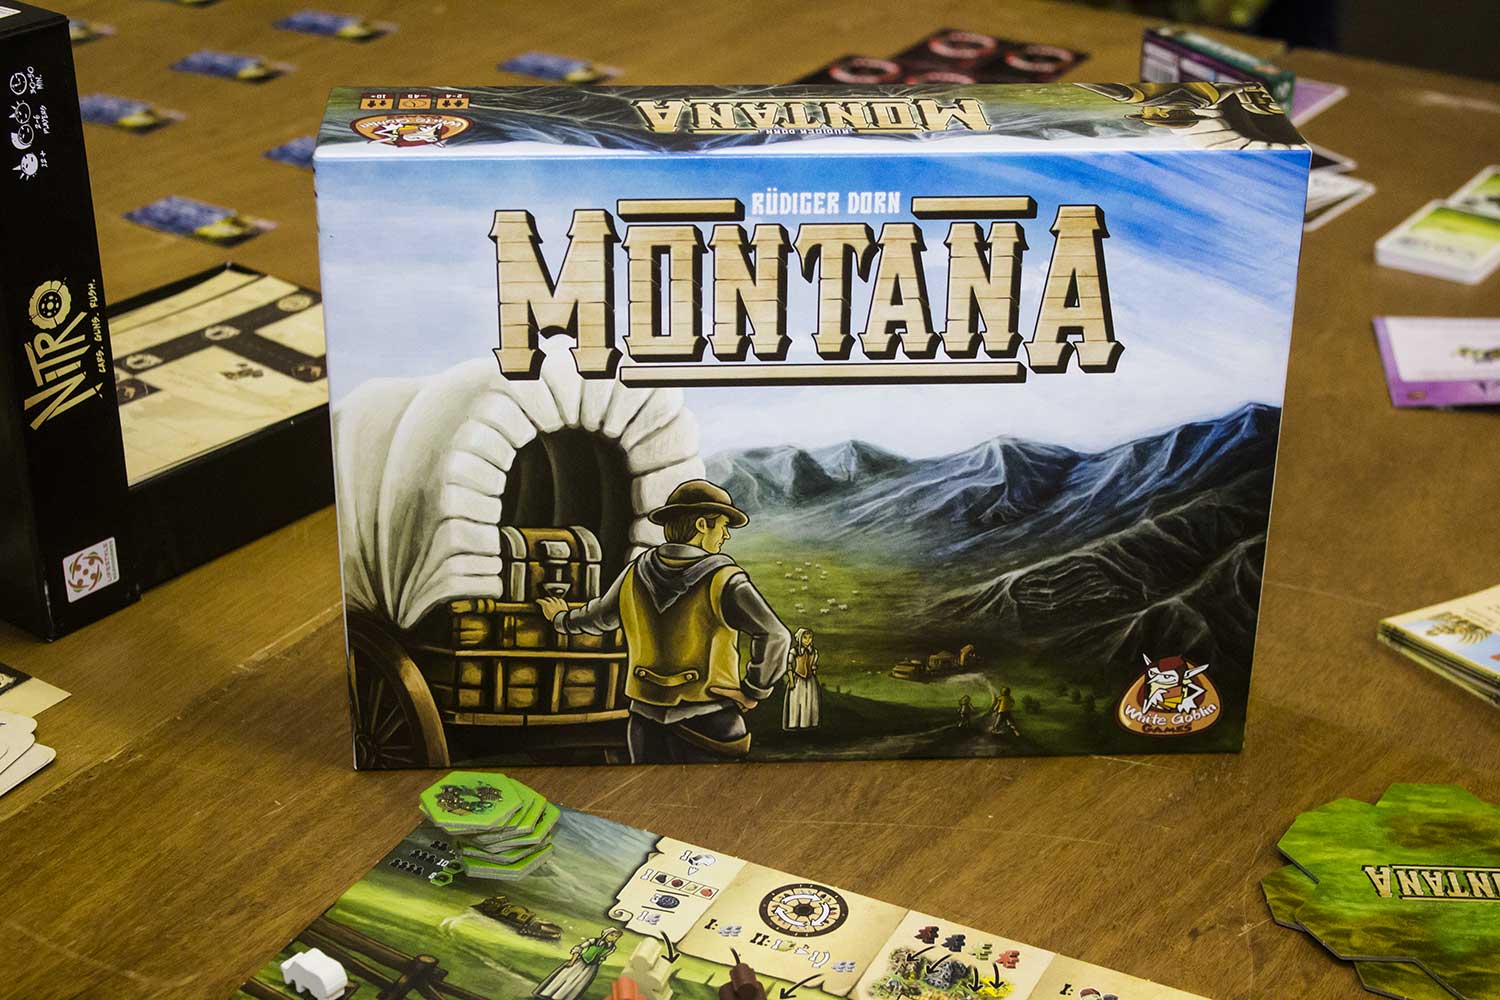 Montana von White Goblin Games auf der Spiel ‘17 ausprobieren